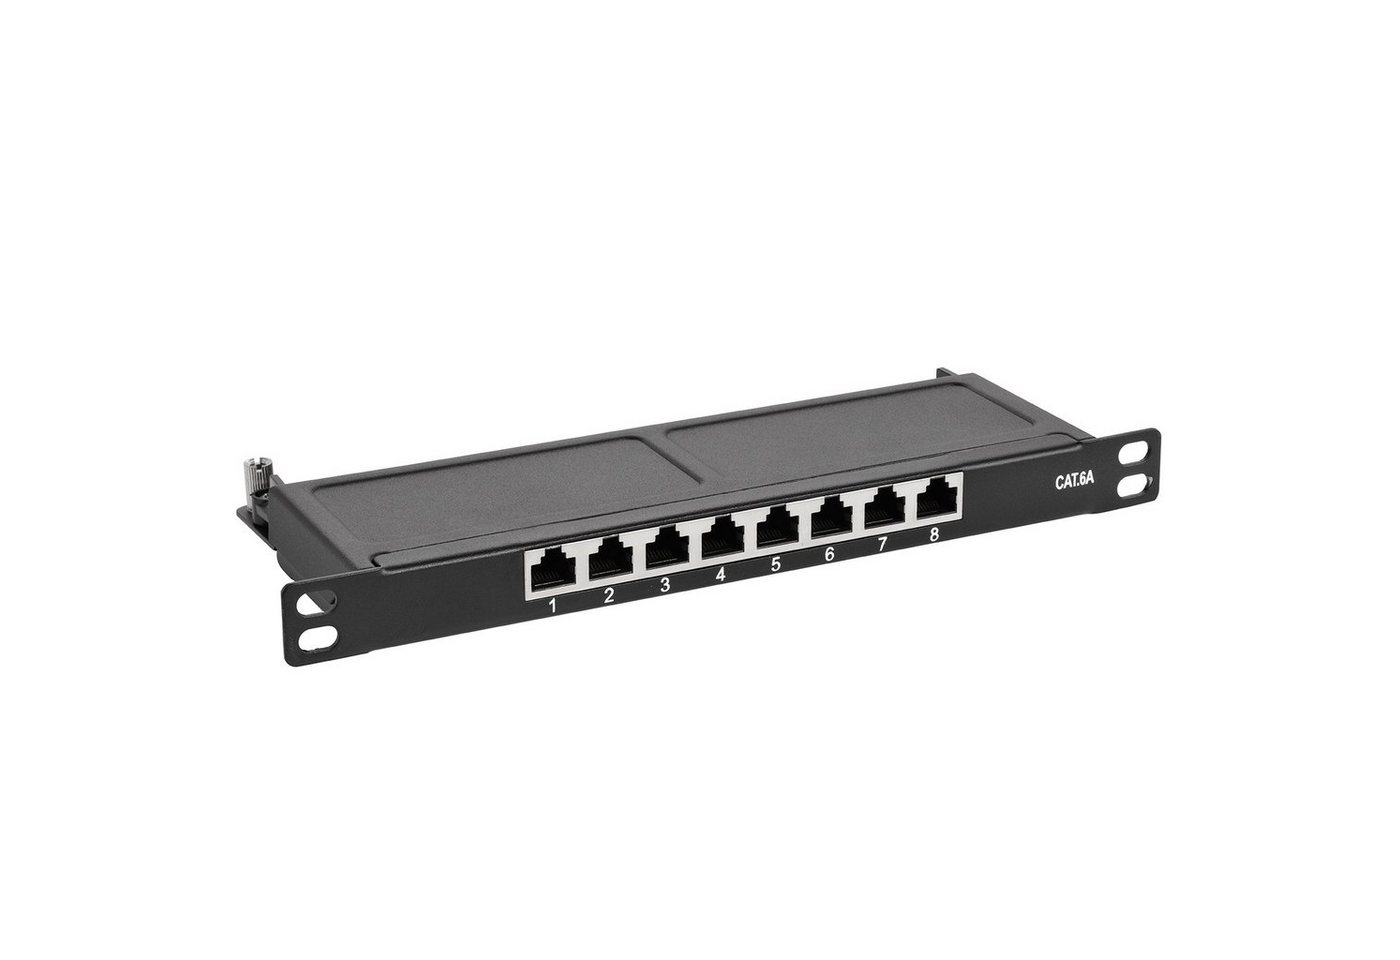 TPFNet 10 CAT6a Patchfeld / Verteilerfeld / Patchpanel Netzwerk-Patch-Panel (0,5HE, 8 Ports, CAT6a, RJ45-Ethernet, 10000 Mb/s, 1HE und 0,5HE sowie in Grau RAL 7035 oder Schwarz RAL 9005)" von TPFNet